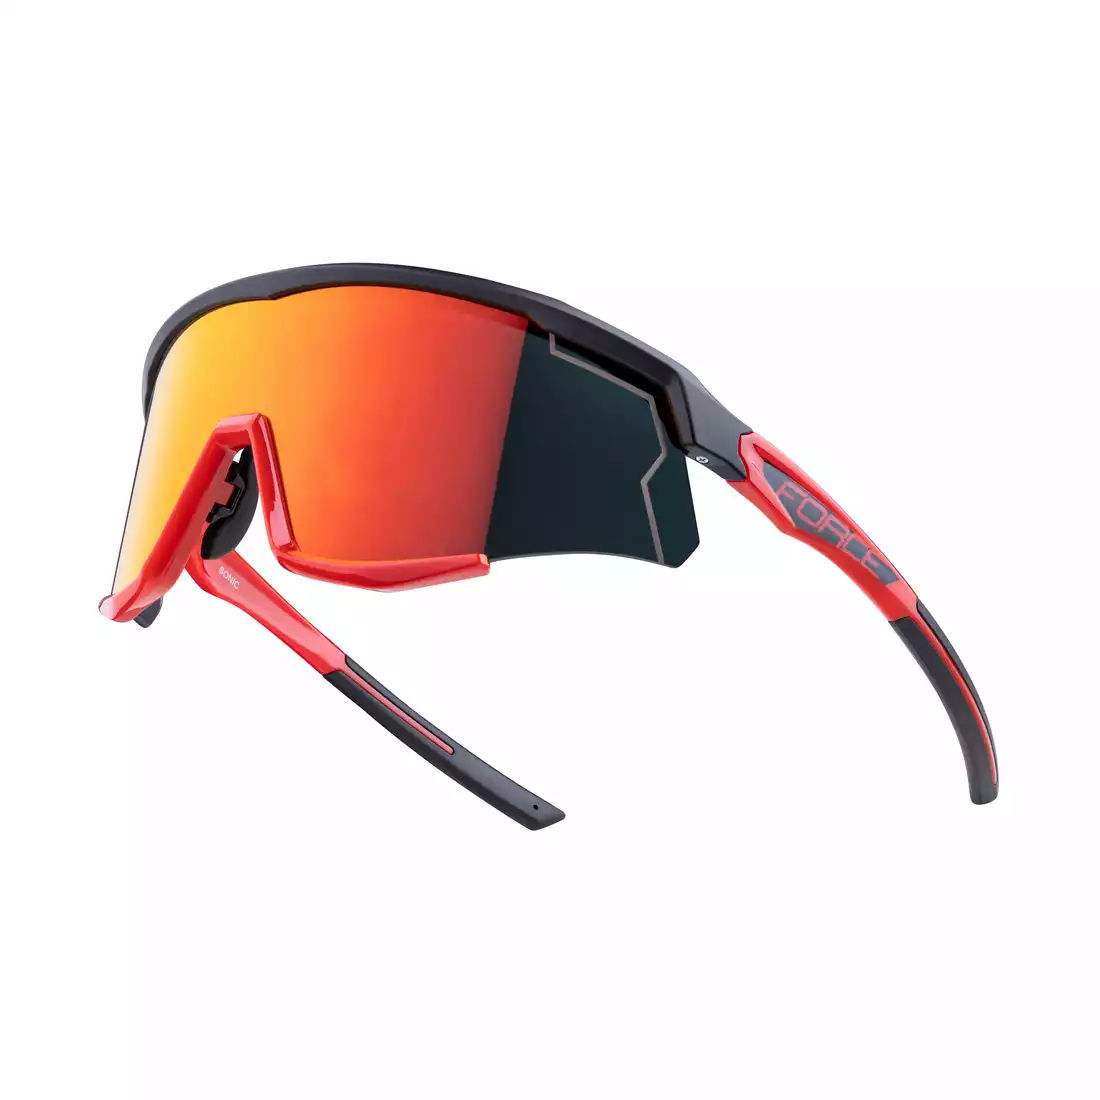 FORCE okulary rowerowe / sportowe SONIC, czarno-czerwone, 910950